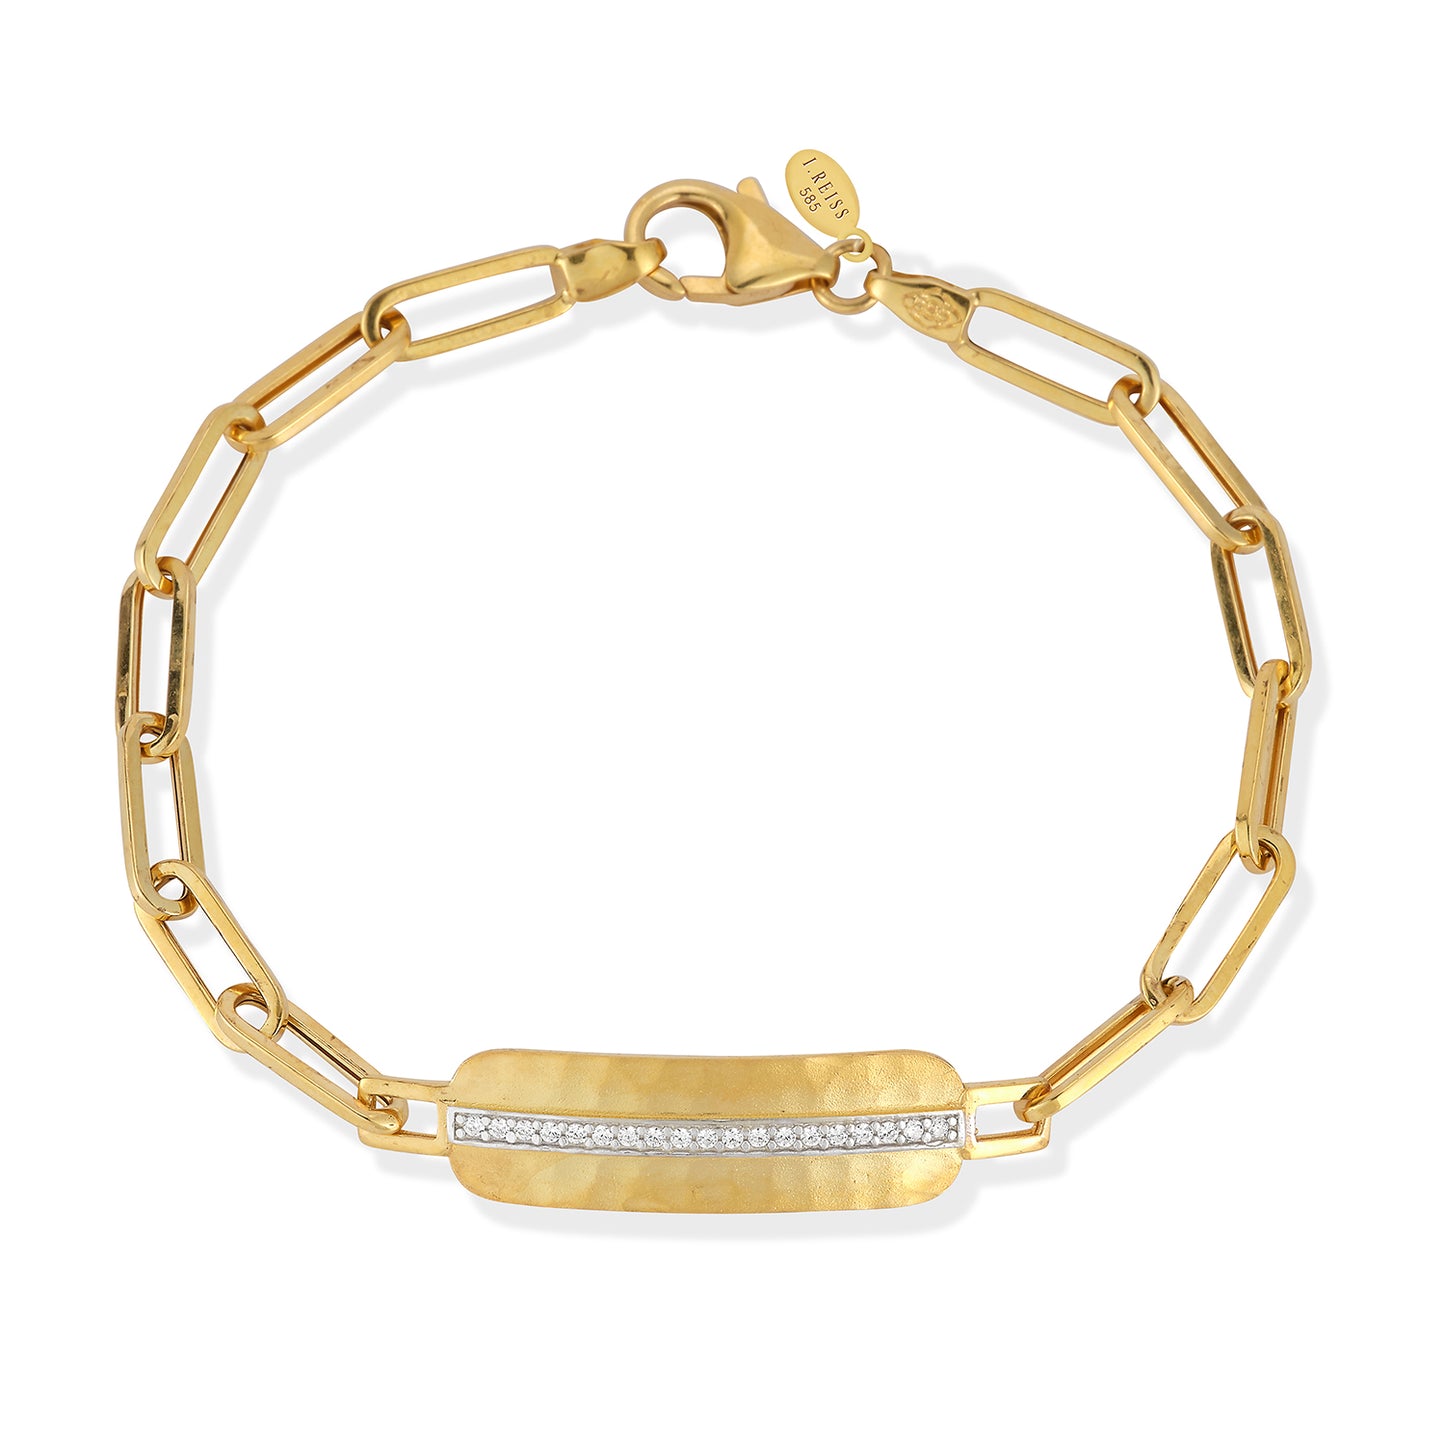 14 Karat Yellow Gold Open Link Bar Bracelet